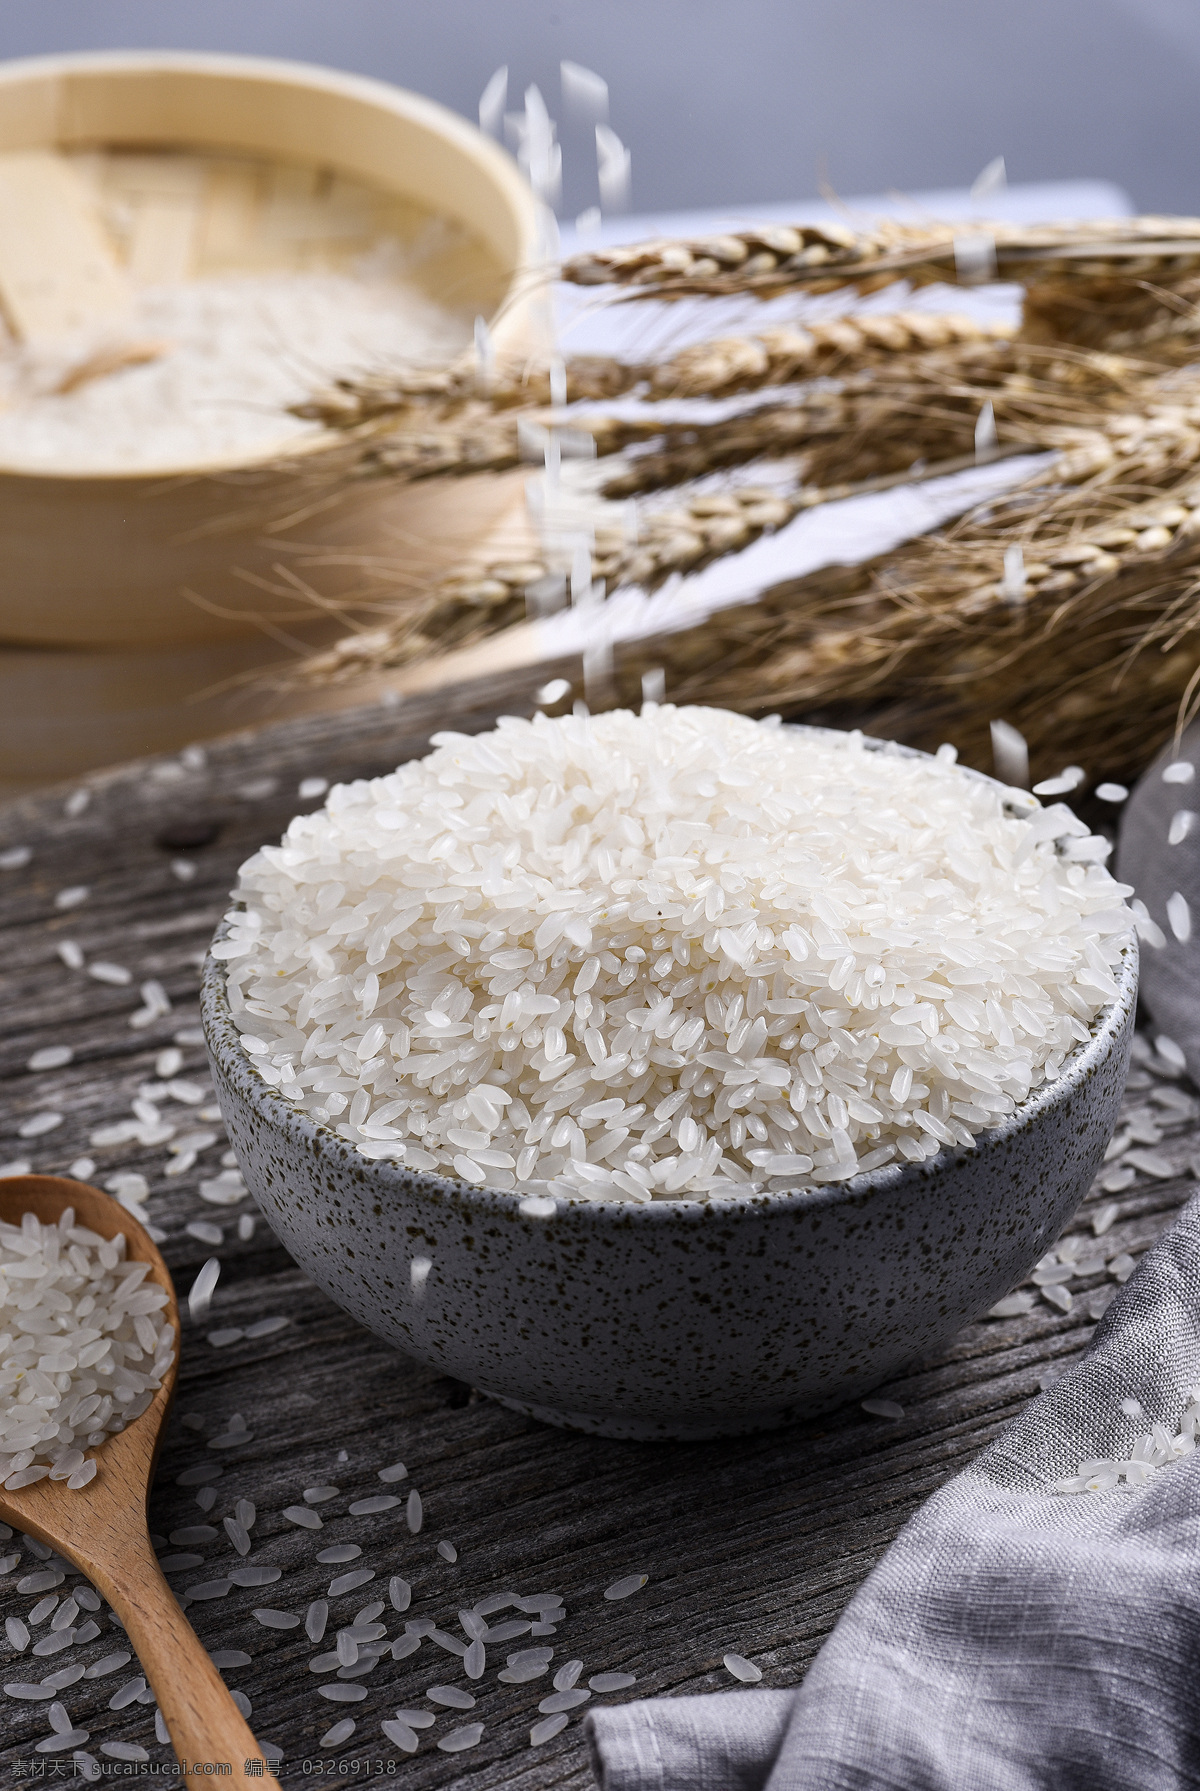 大米 水稻 米 米饭 饭碗 碗 米粒 长粒香 长粒米 圆米 水稻田 餐饮美食 食物原料